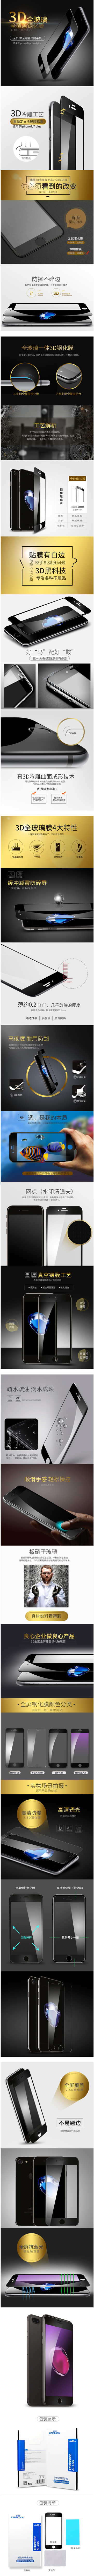 淘宝美工稻草人iphone7/plus 3D全屏高清抗蓝光防爆钢化玻璃膜爆款详情页设计作品